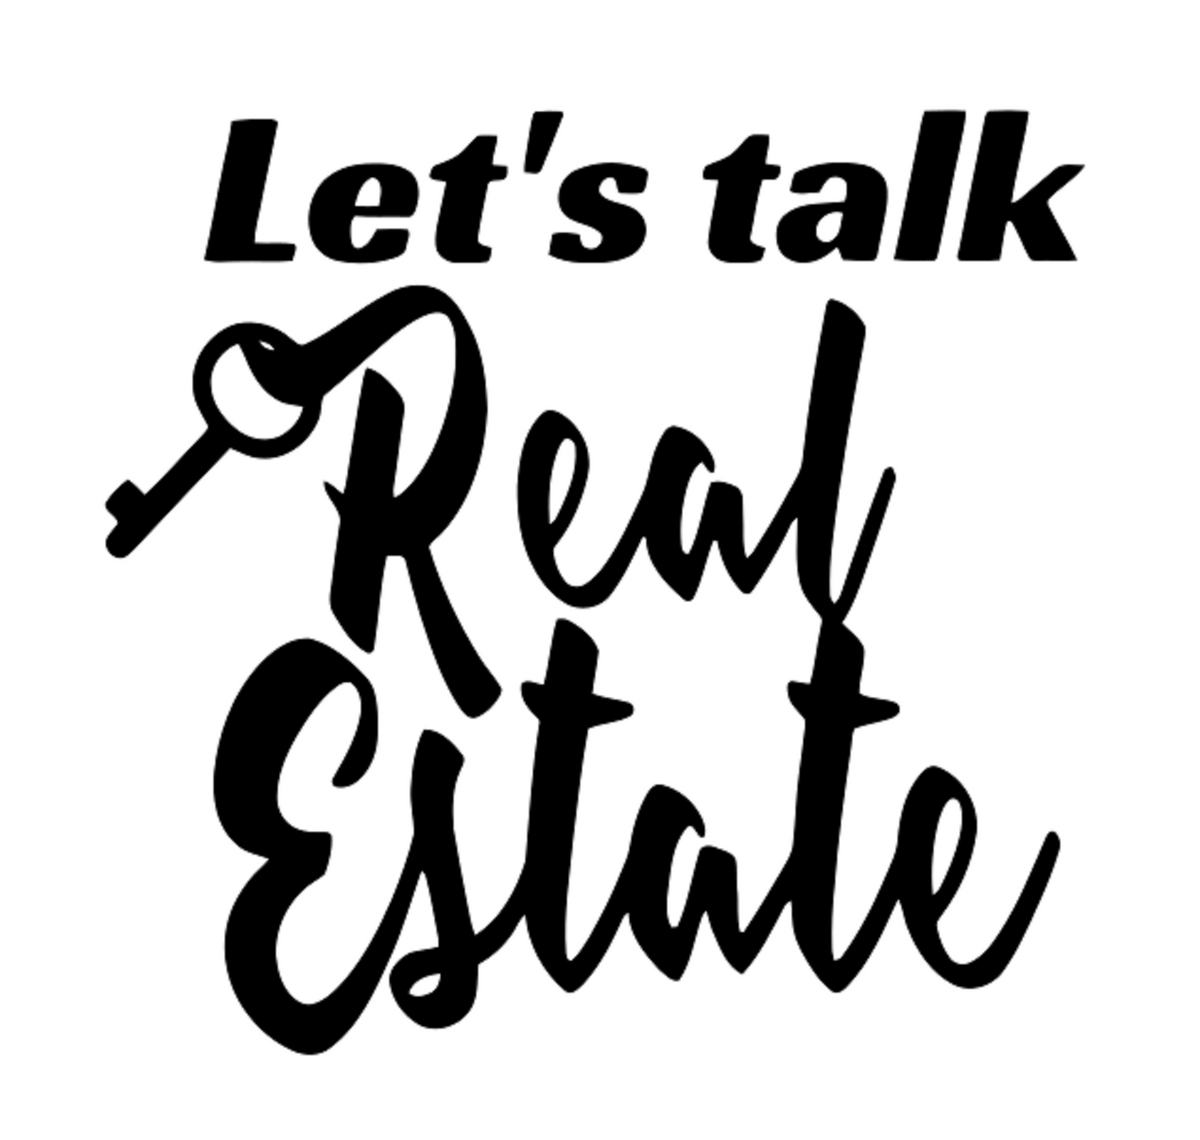 Let's Talk Real Estate t-shirt